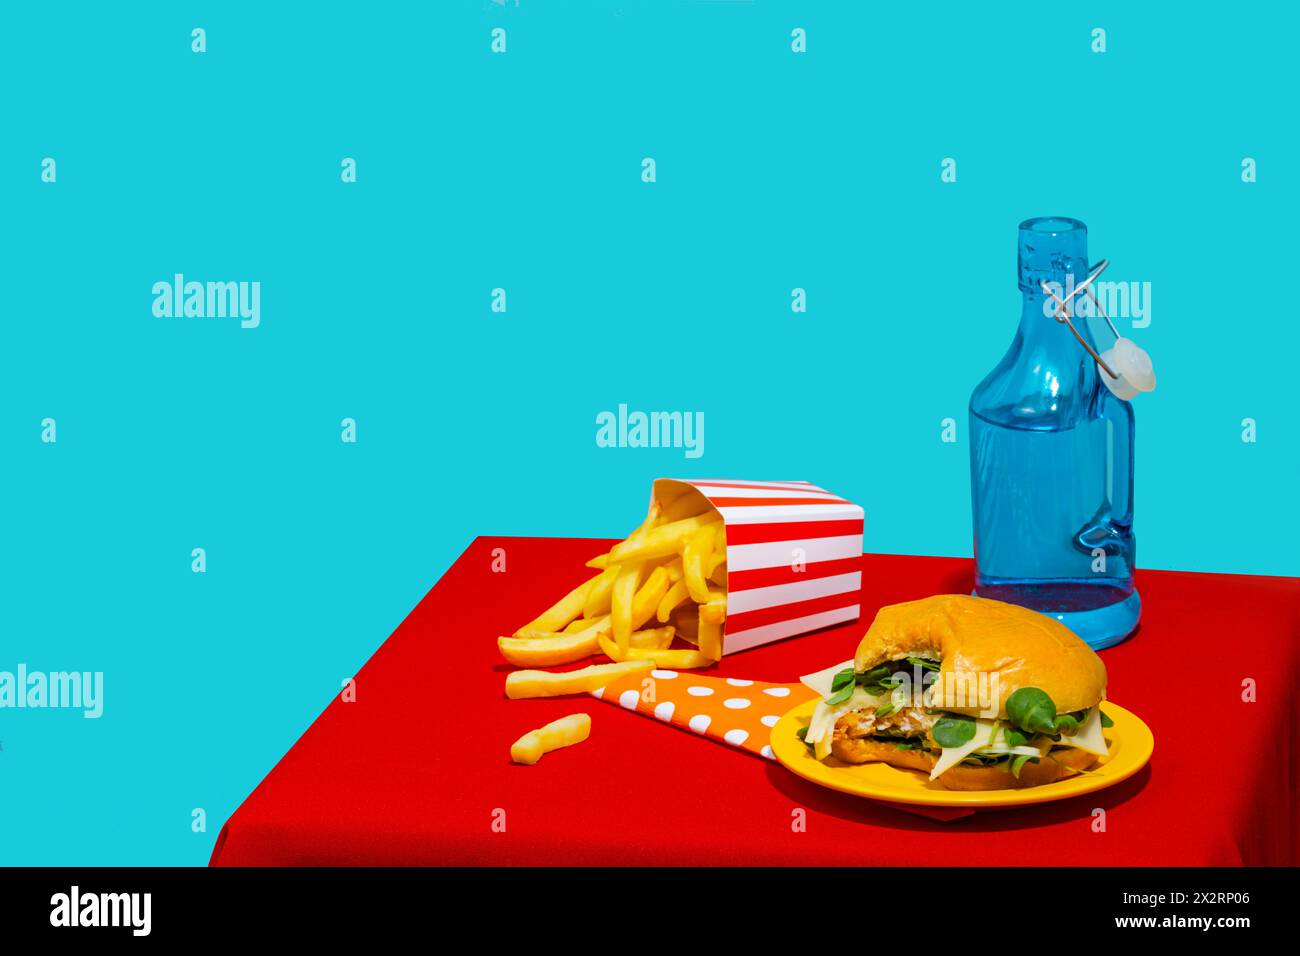 Morsure prise de hamburger près de frites et bouteille de soda sur fond bleu Banque D'Images